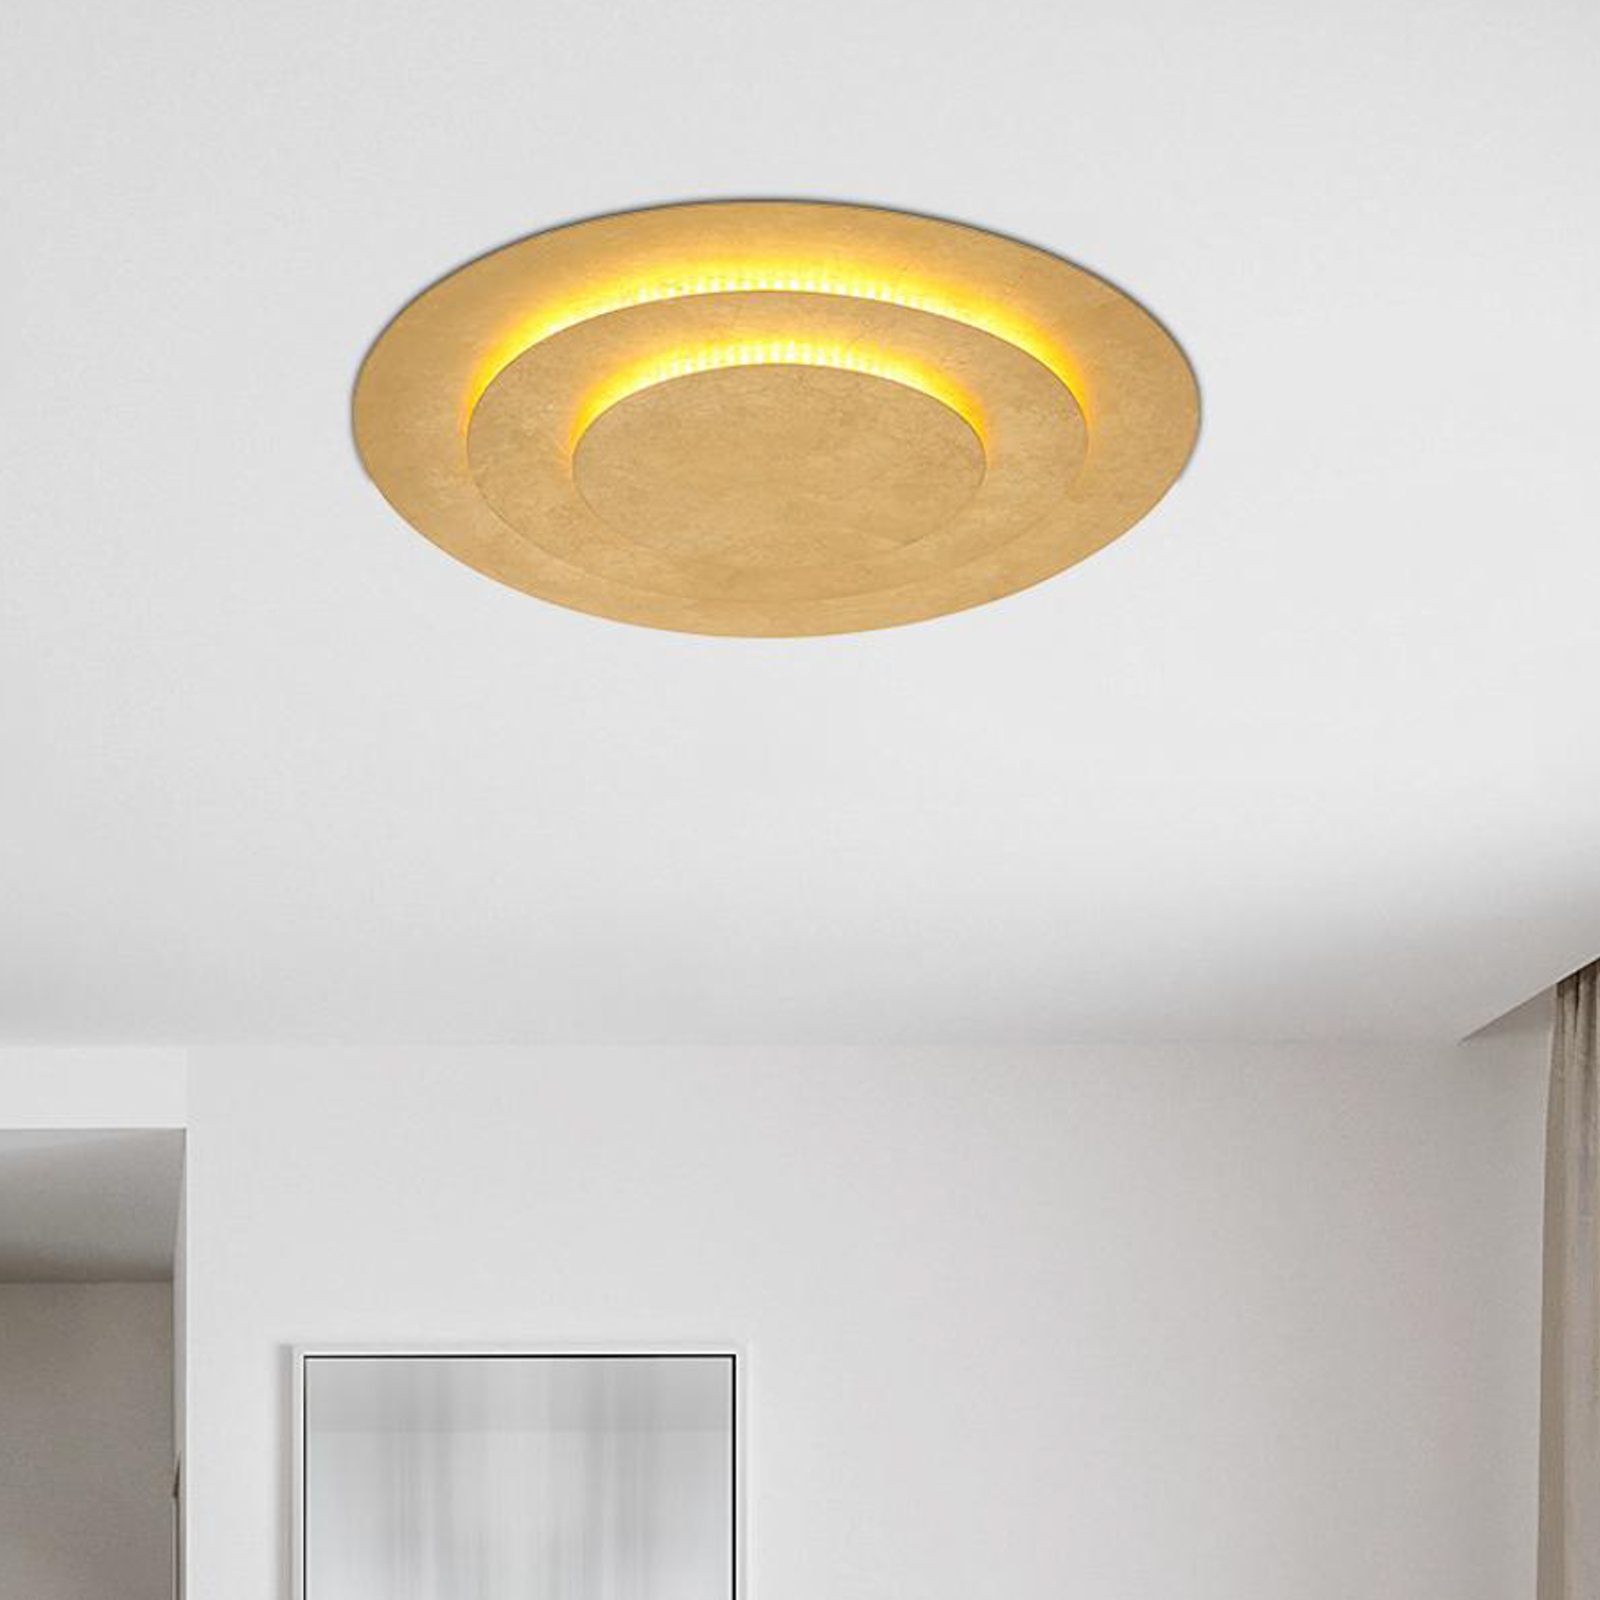 Heda plafondlamp, Ø 49 cm, goudkleurig, metaal